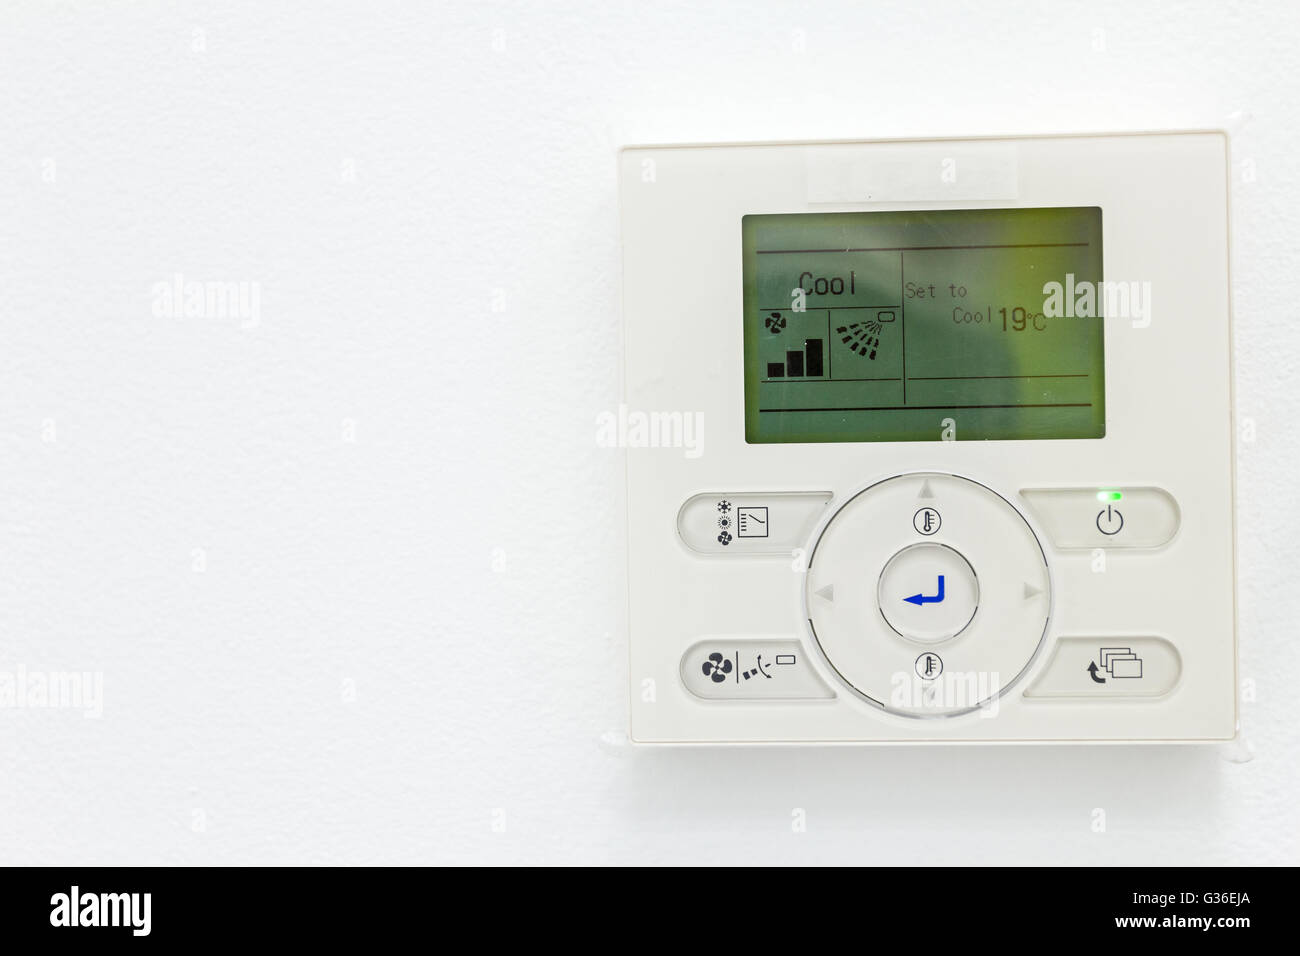 Automatización del hogar inteligente: Wall Display mostrando consumos domésticos relacionados con la temperatura y la calefacción. Foto de stock